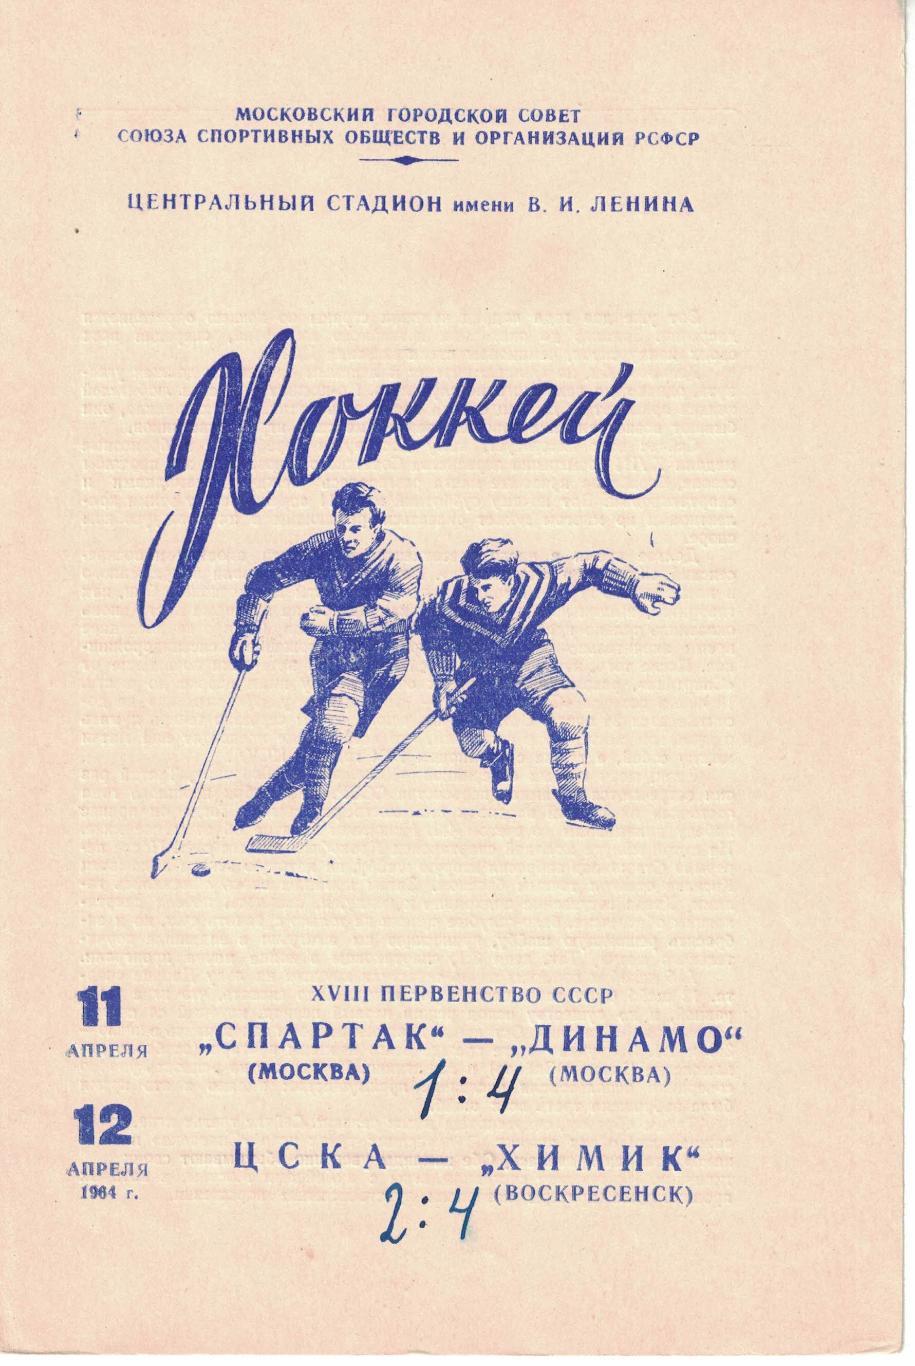 Спартак Москва - Динамо Москва, ЦСКА - Химик 11 и 12.04.1964 Чемпионат СССР